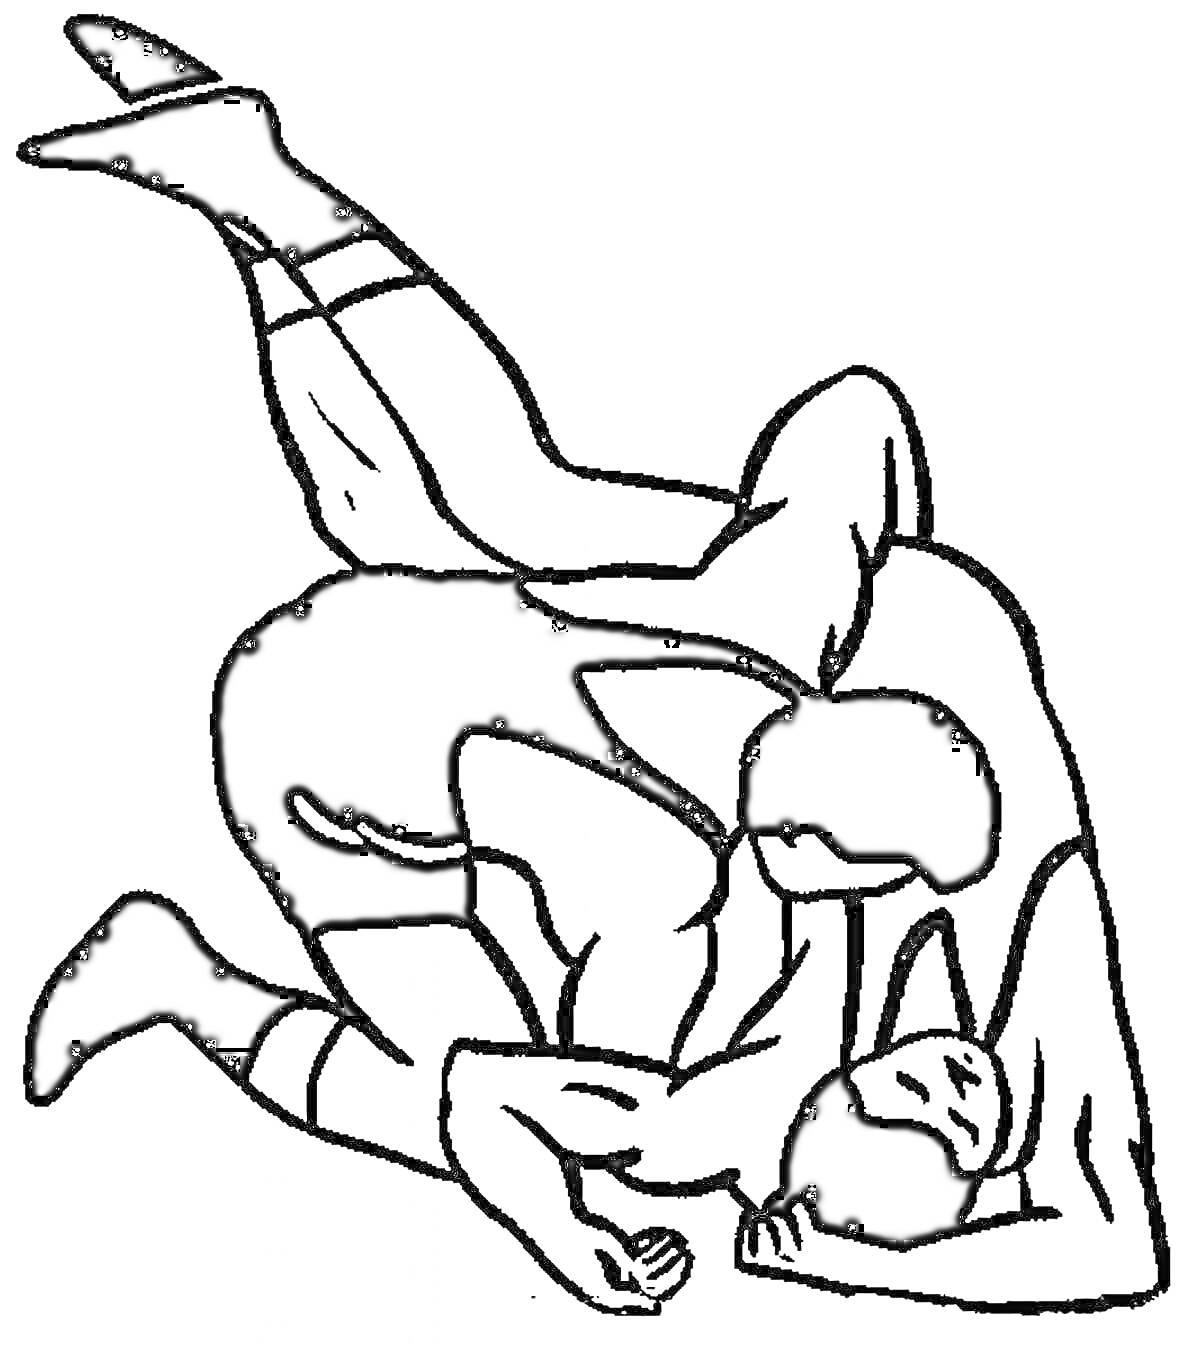 Раскраска Двое борцов в спортивной схватке на полу